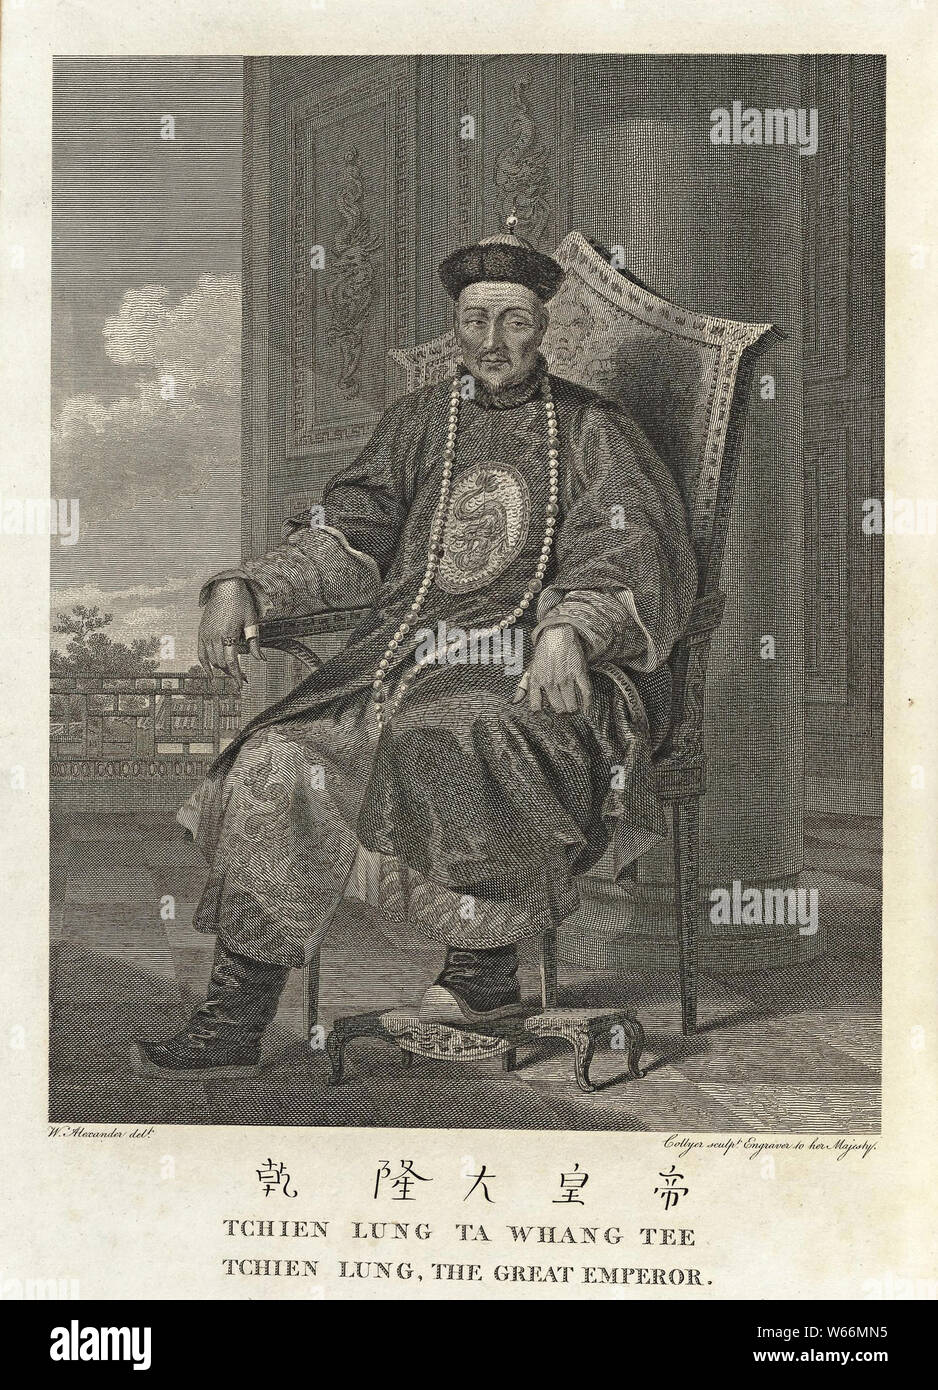 Ritratto dell'Imperatore Qianlong, seduti su una sedia. Incisione di William Alexander e pubblicata nel 1774 Foto Stock